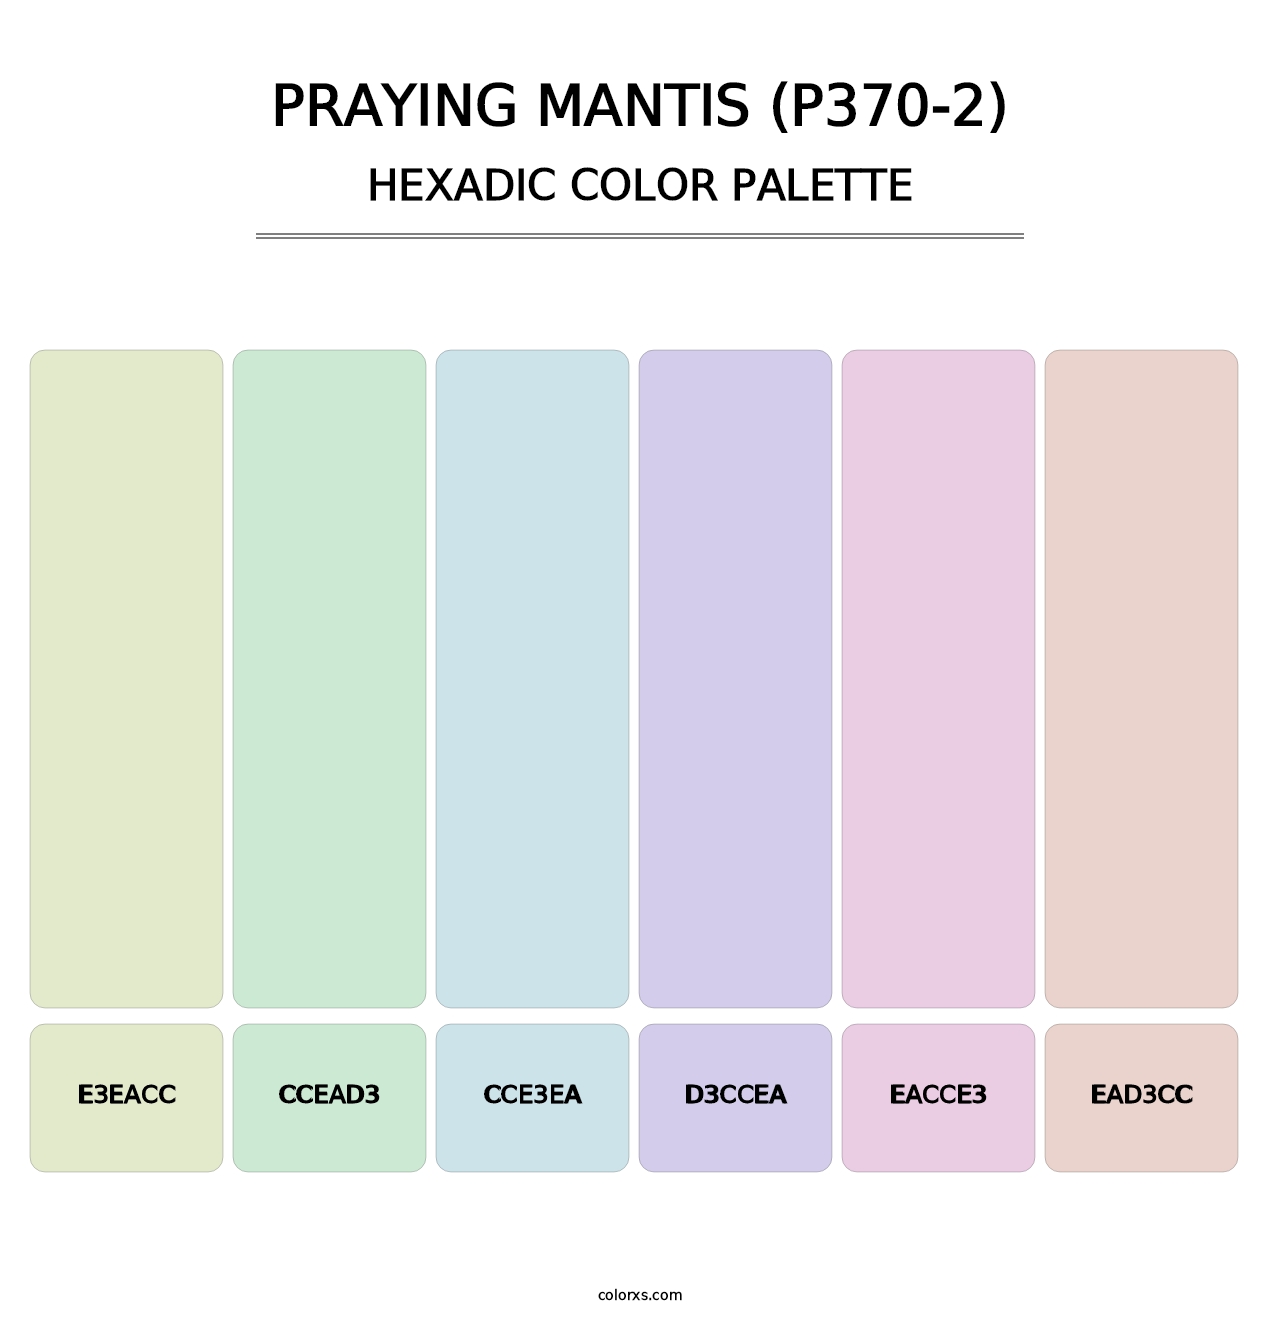 Praying Mantis (P370-2) - Hexadic Color Palette